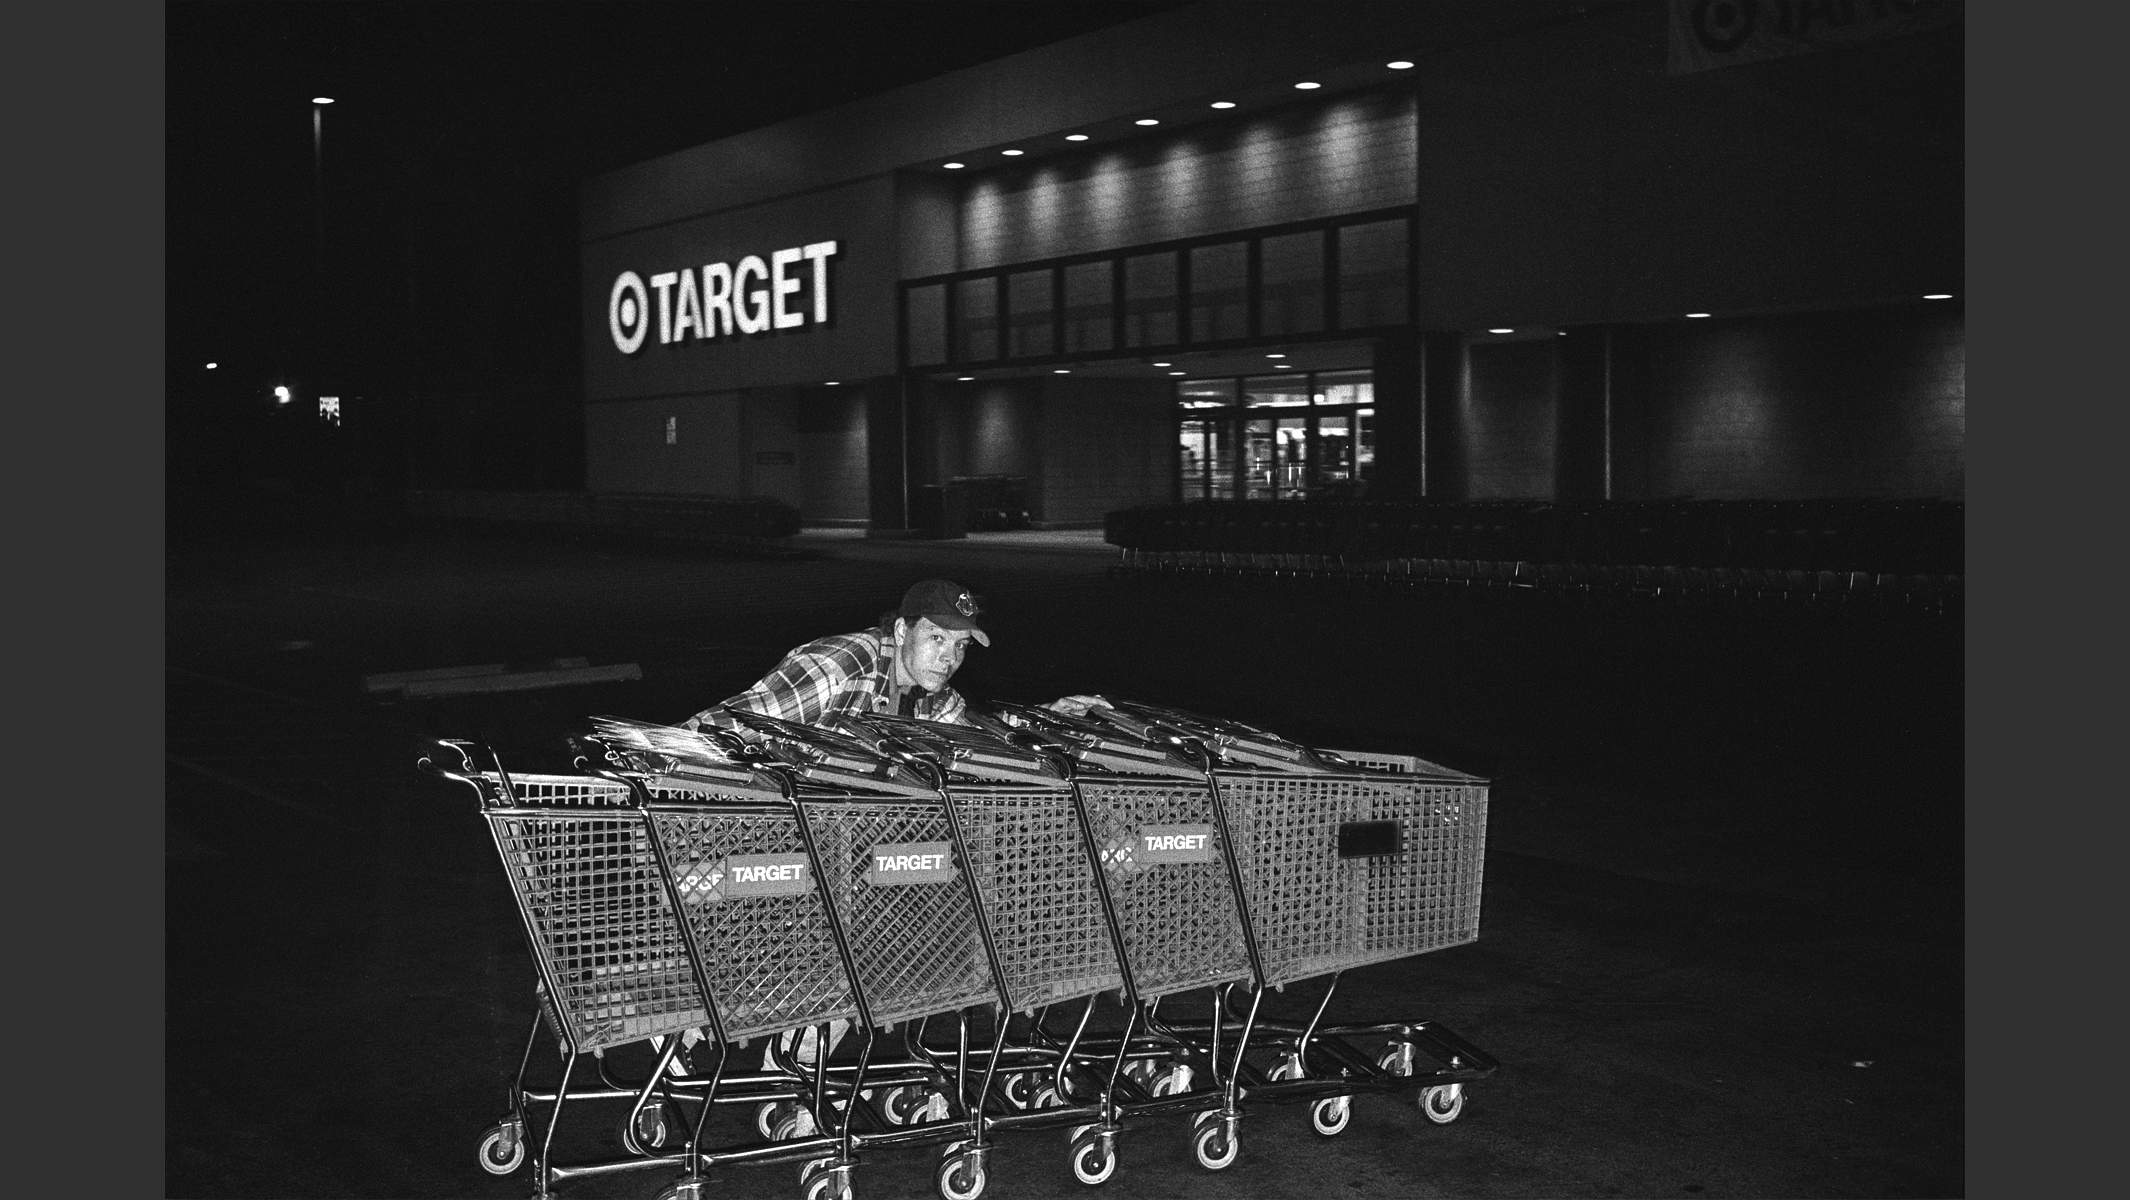 Mann schiebt Einkaufswagen nachts vor Supermarkt zusammen, Los Angeles, Foto in schwarzweiss. © Martin Geier